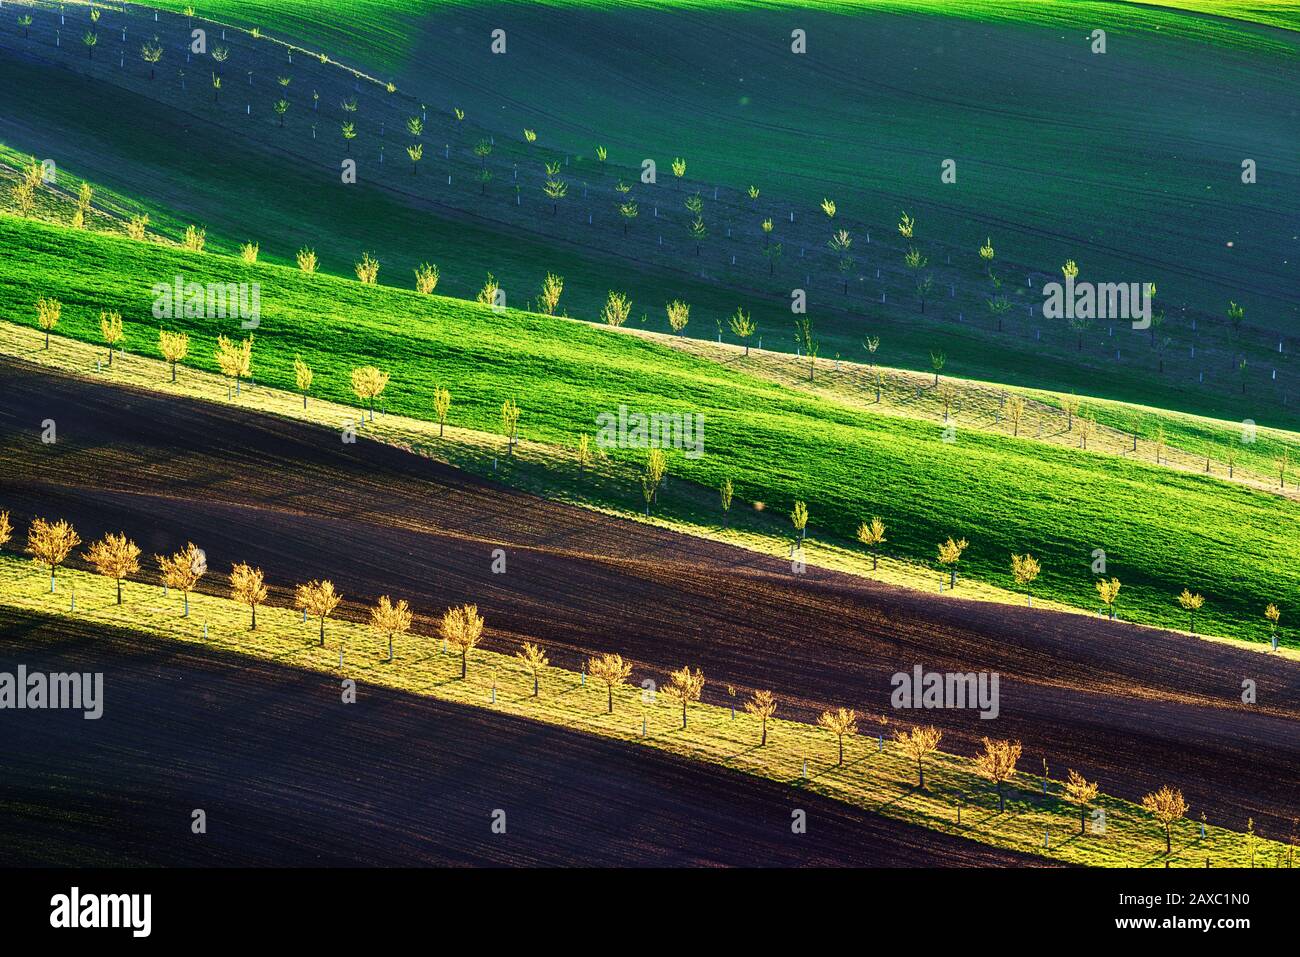 Onde verdi, marroni e gialle dei campi agricoli della Moravia meridionale, Repubblica Ceca. Paesaggio rurale di primavera con colline colorate a strisce con alberi. Può essere utilizzato come sfondo naturale o texture Foto Stock